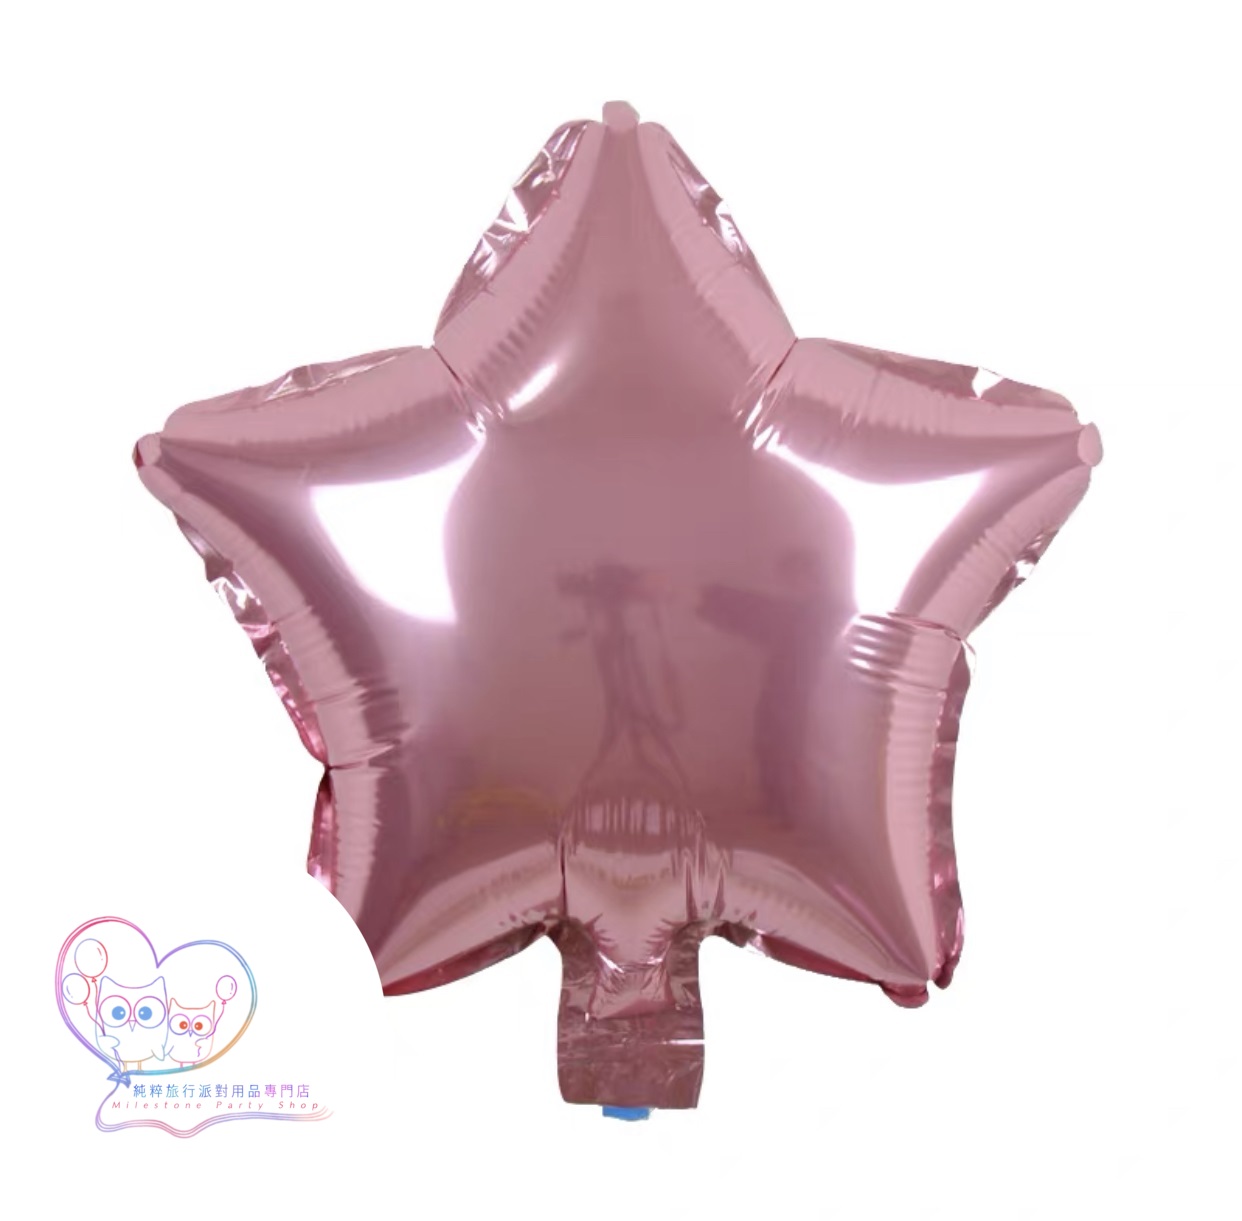 10吋星星鋁膜氣球 (粉紅色) 10S4